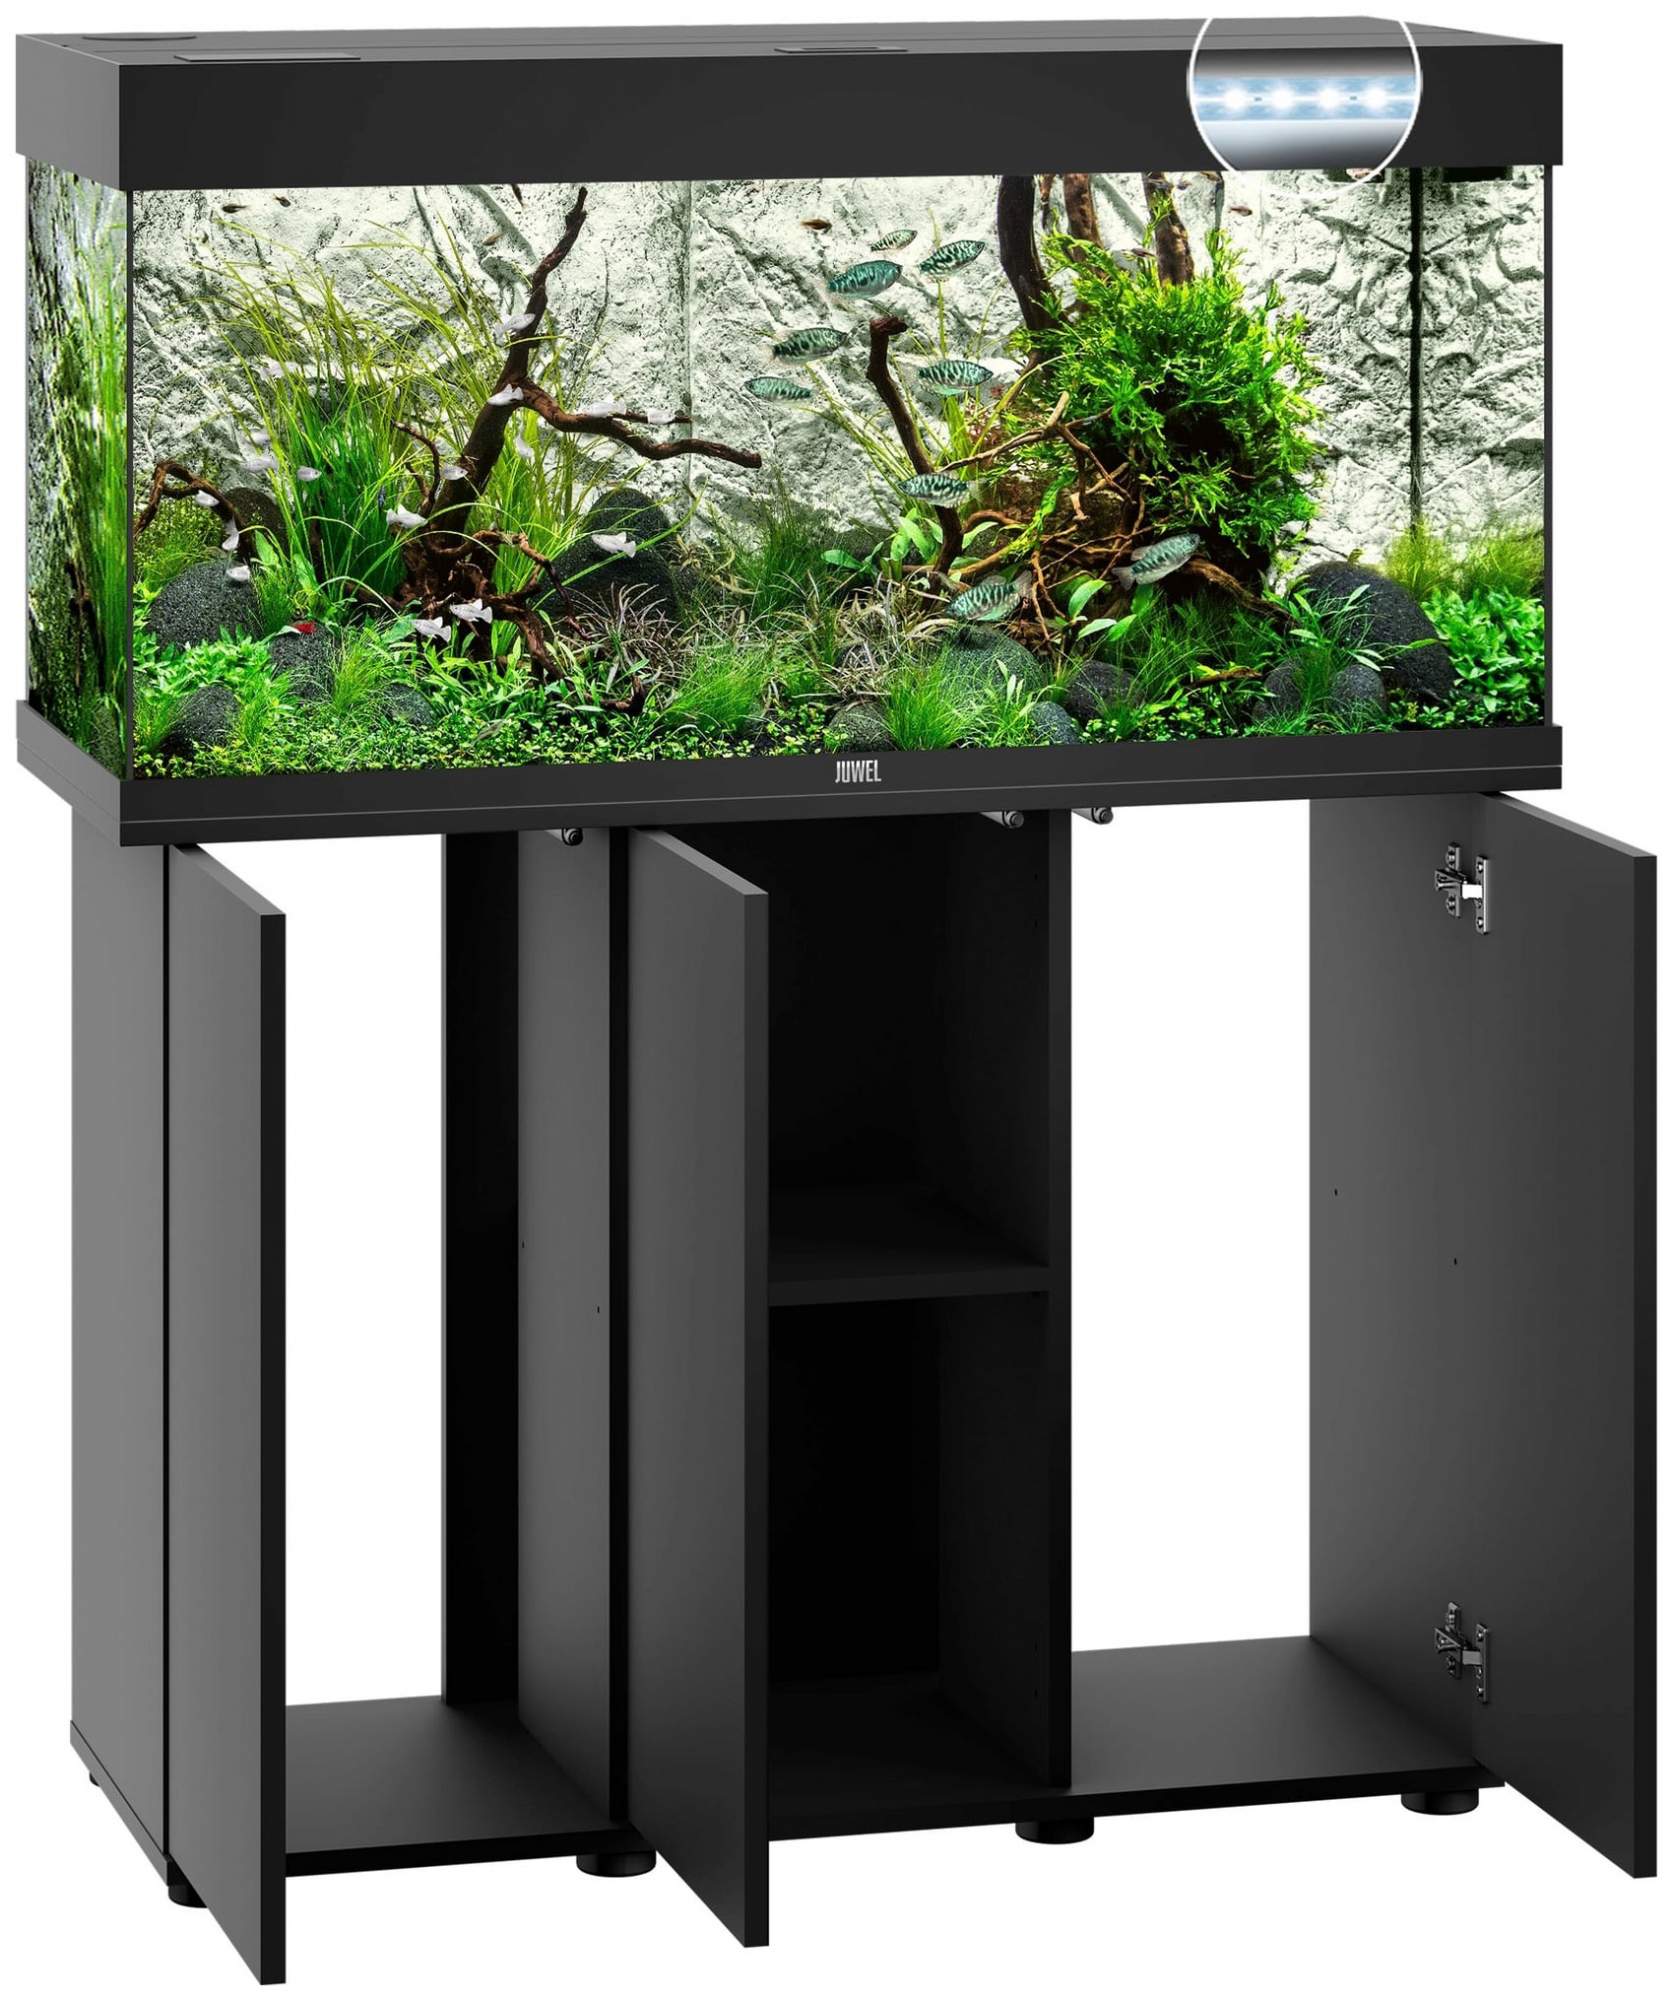 Аквариум для рыб Juwel Rio 180 LED, влагозащитная поверхность, черный, 180 л